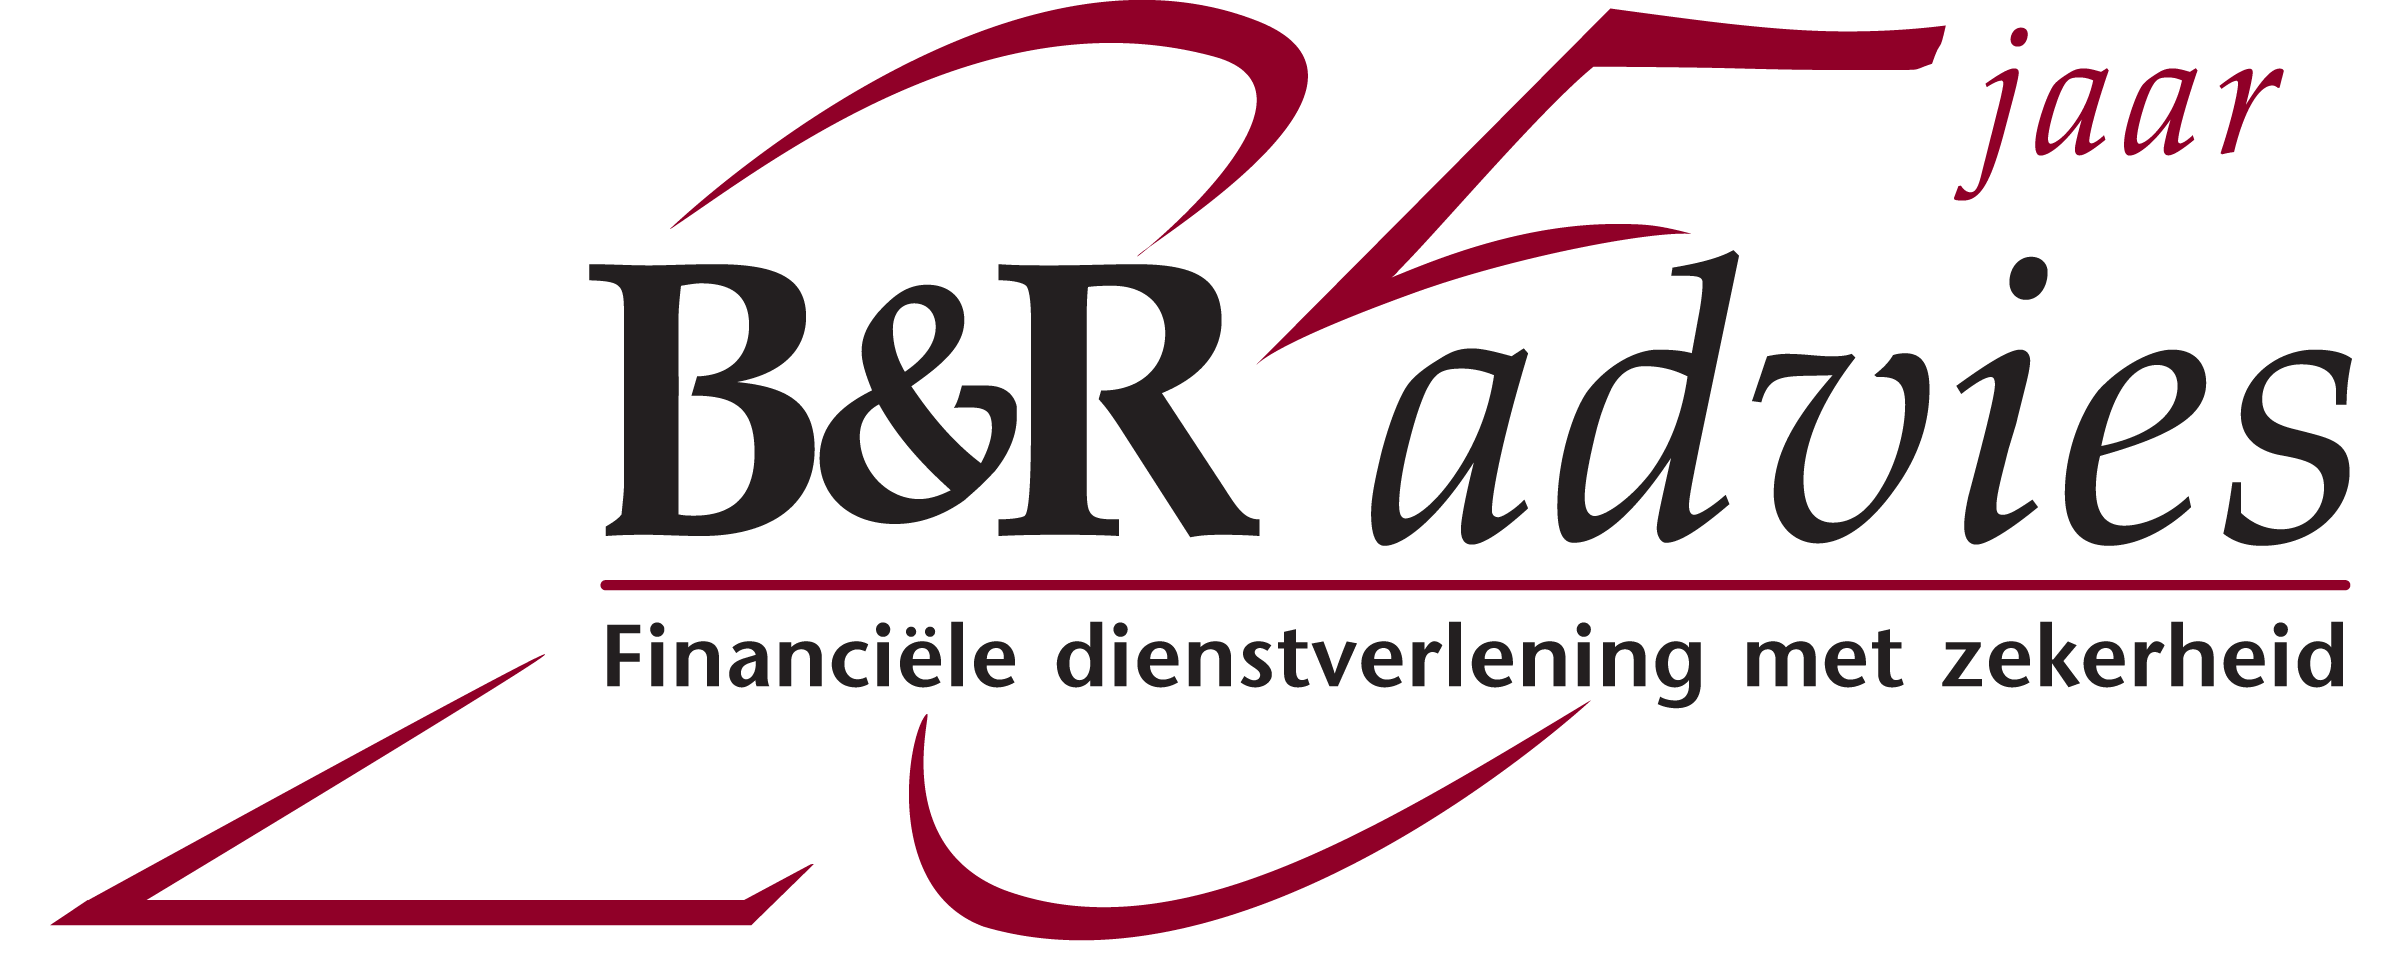 B&R Advies BV 25 Jaar